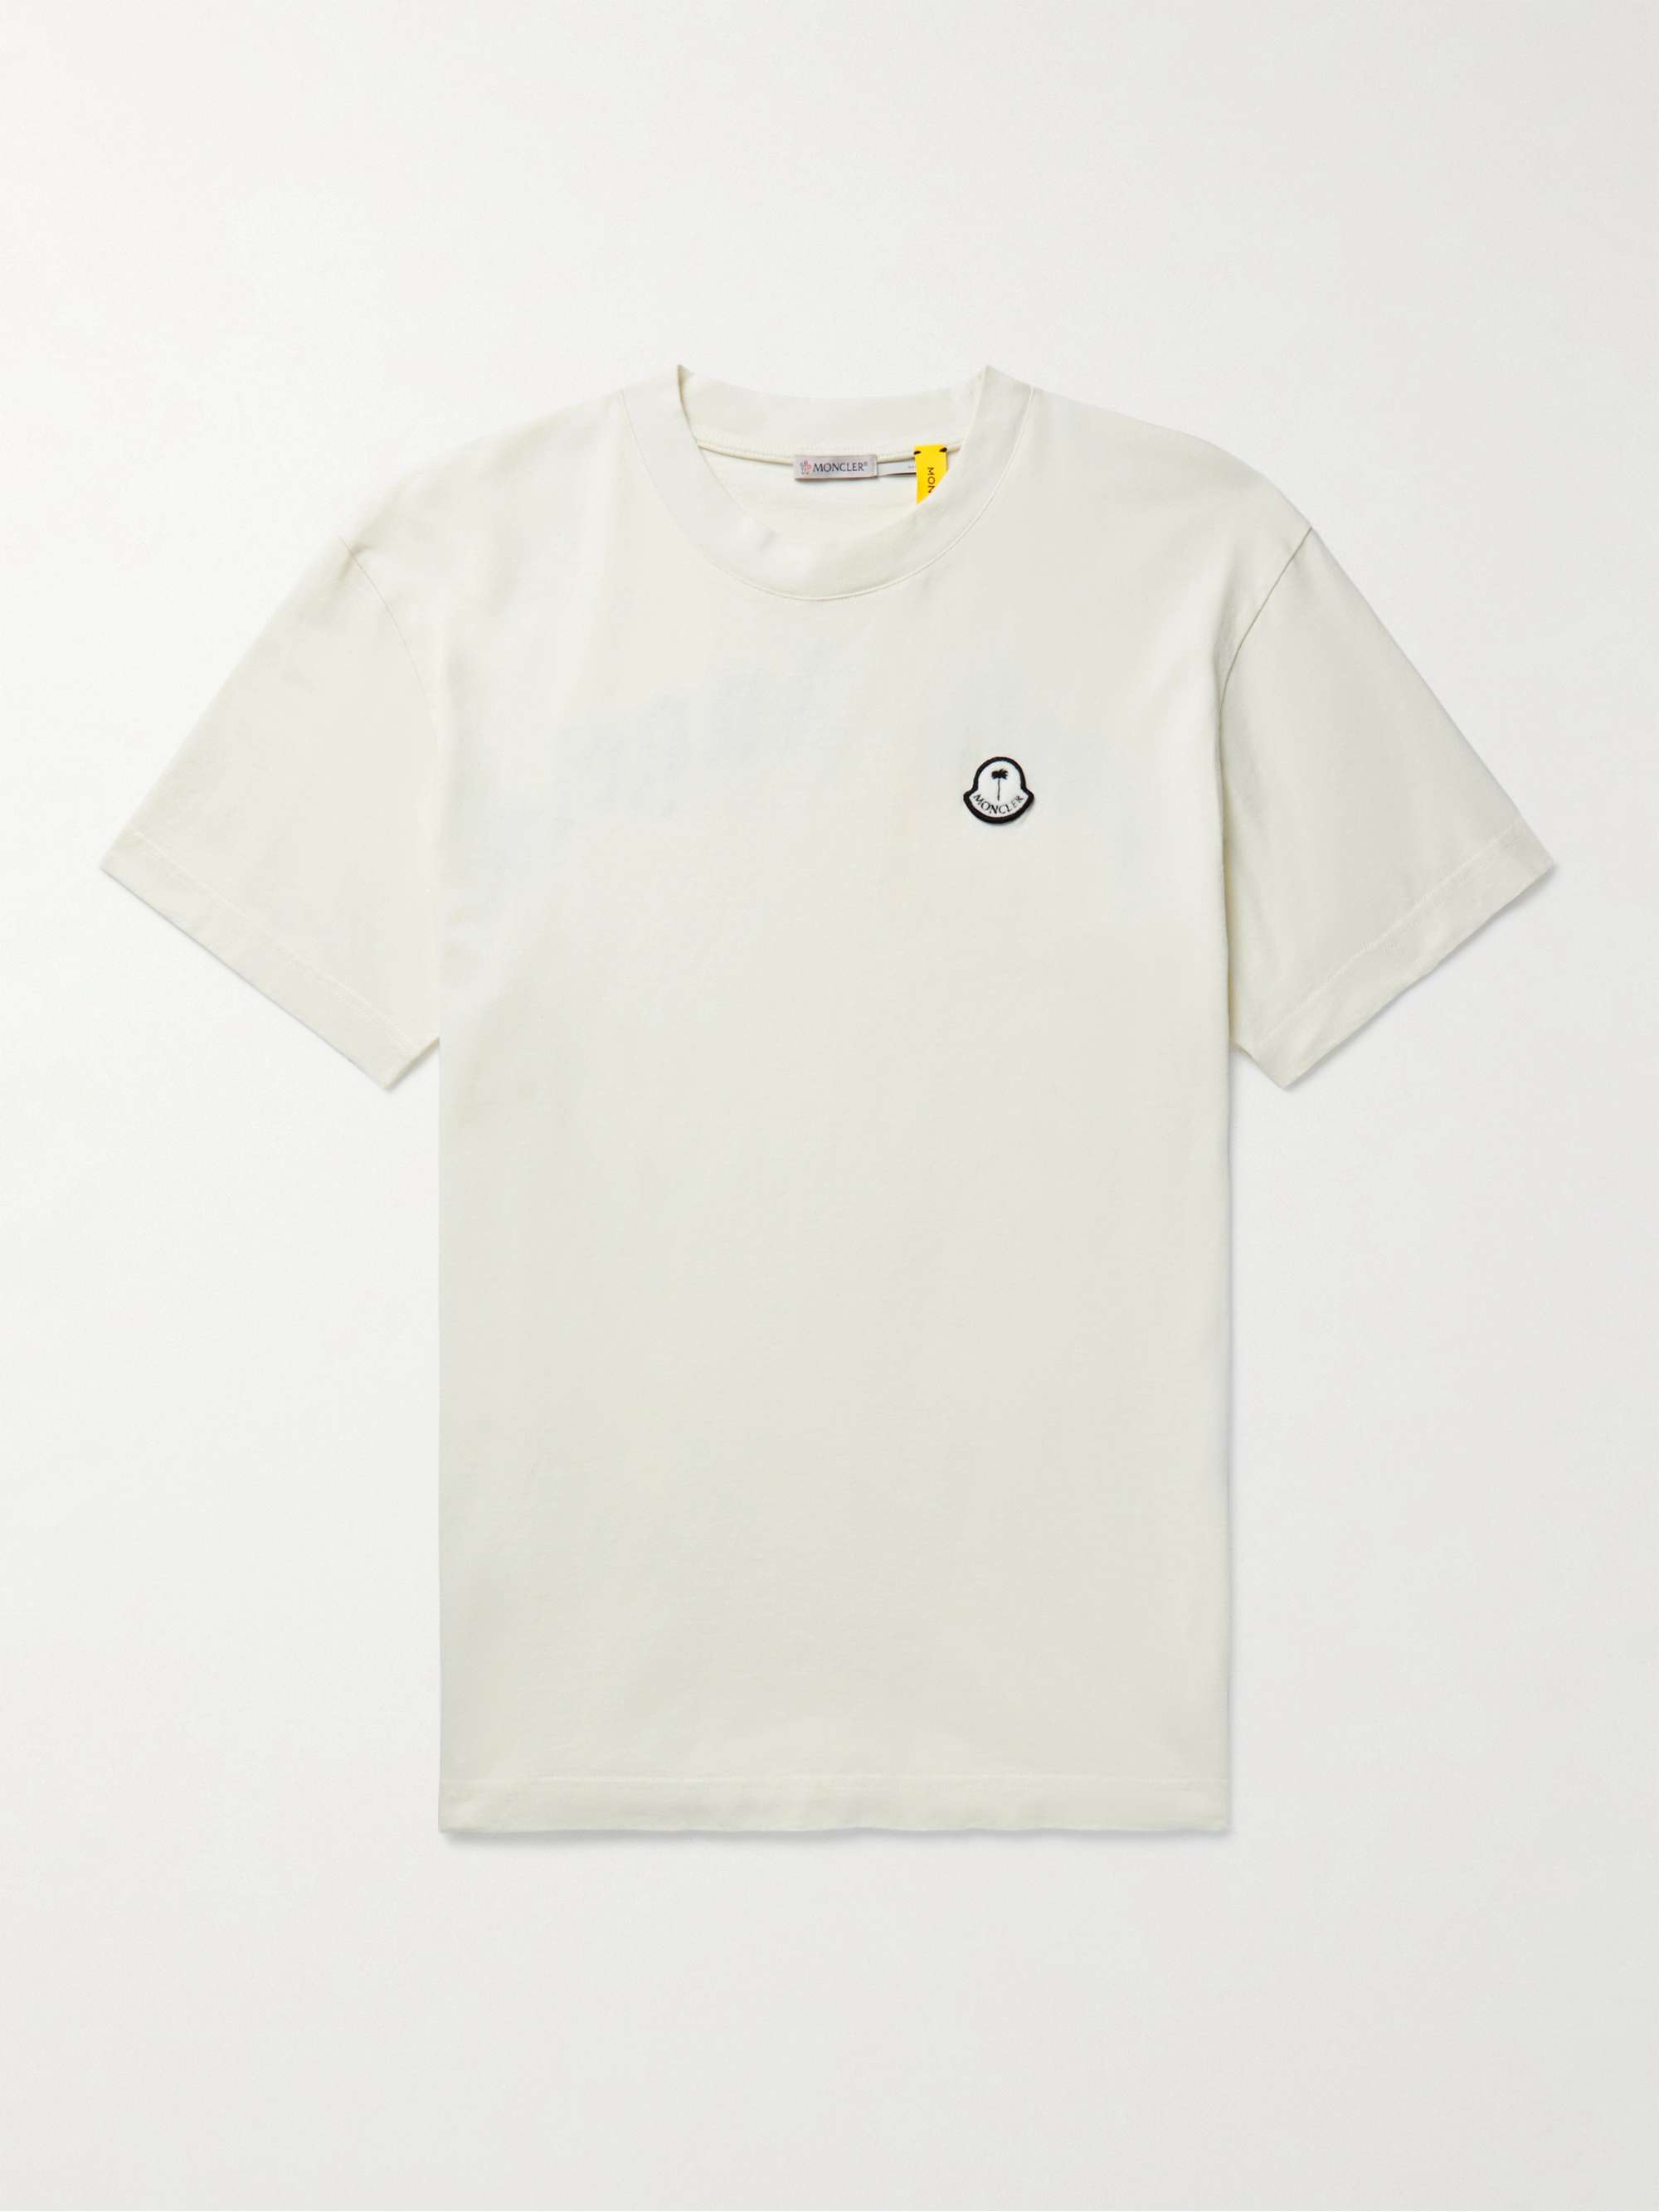 MONCLER GENIUS + 8 Palm Angels Logo-Appliquéd Printed Cotton-Jersey T-Shirt  | MR PORTER